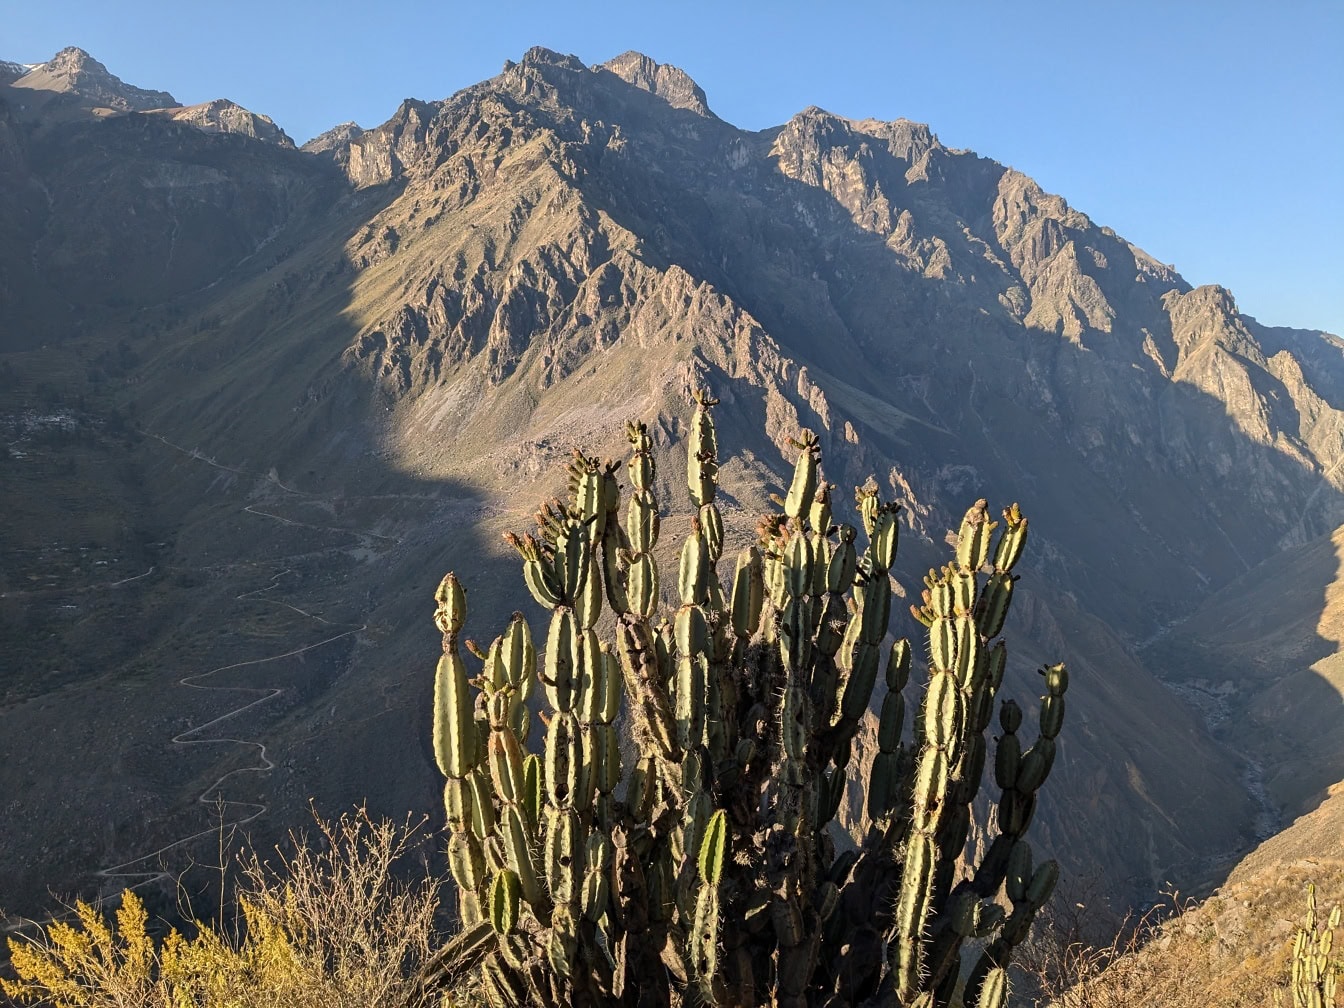 Kaktus zvaný peruánský jablečný kaktus (Cereus repandus) před horou v kaňonu Colca v Peru